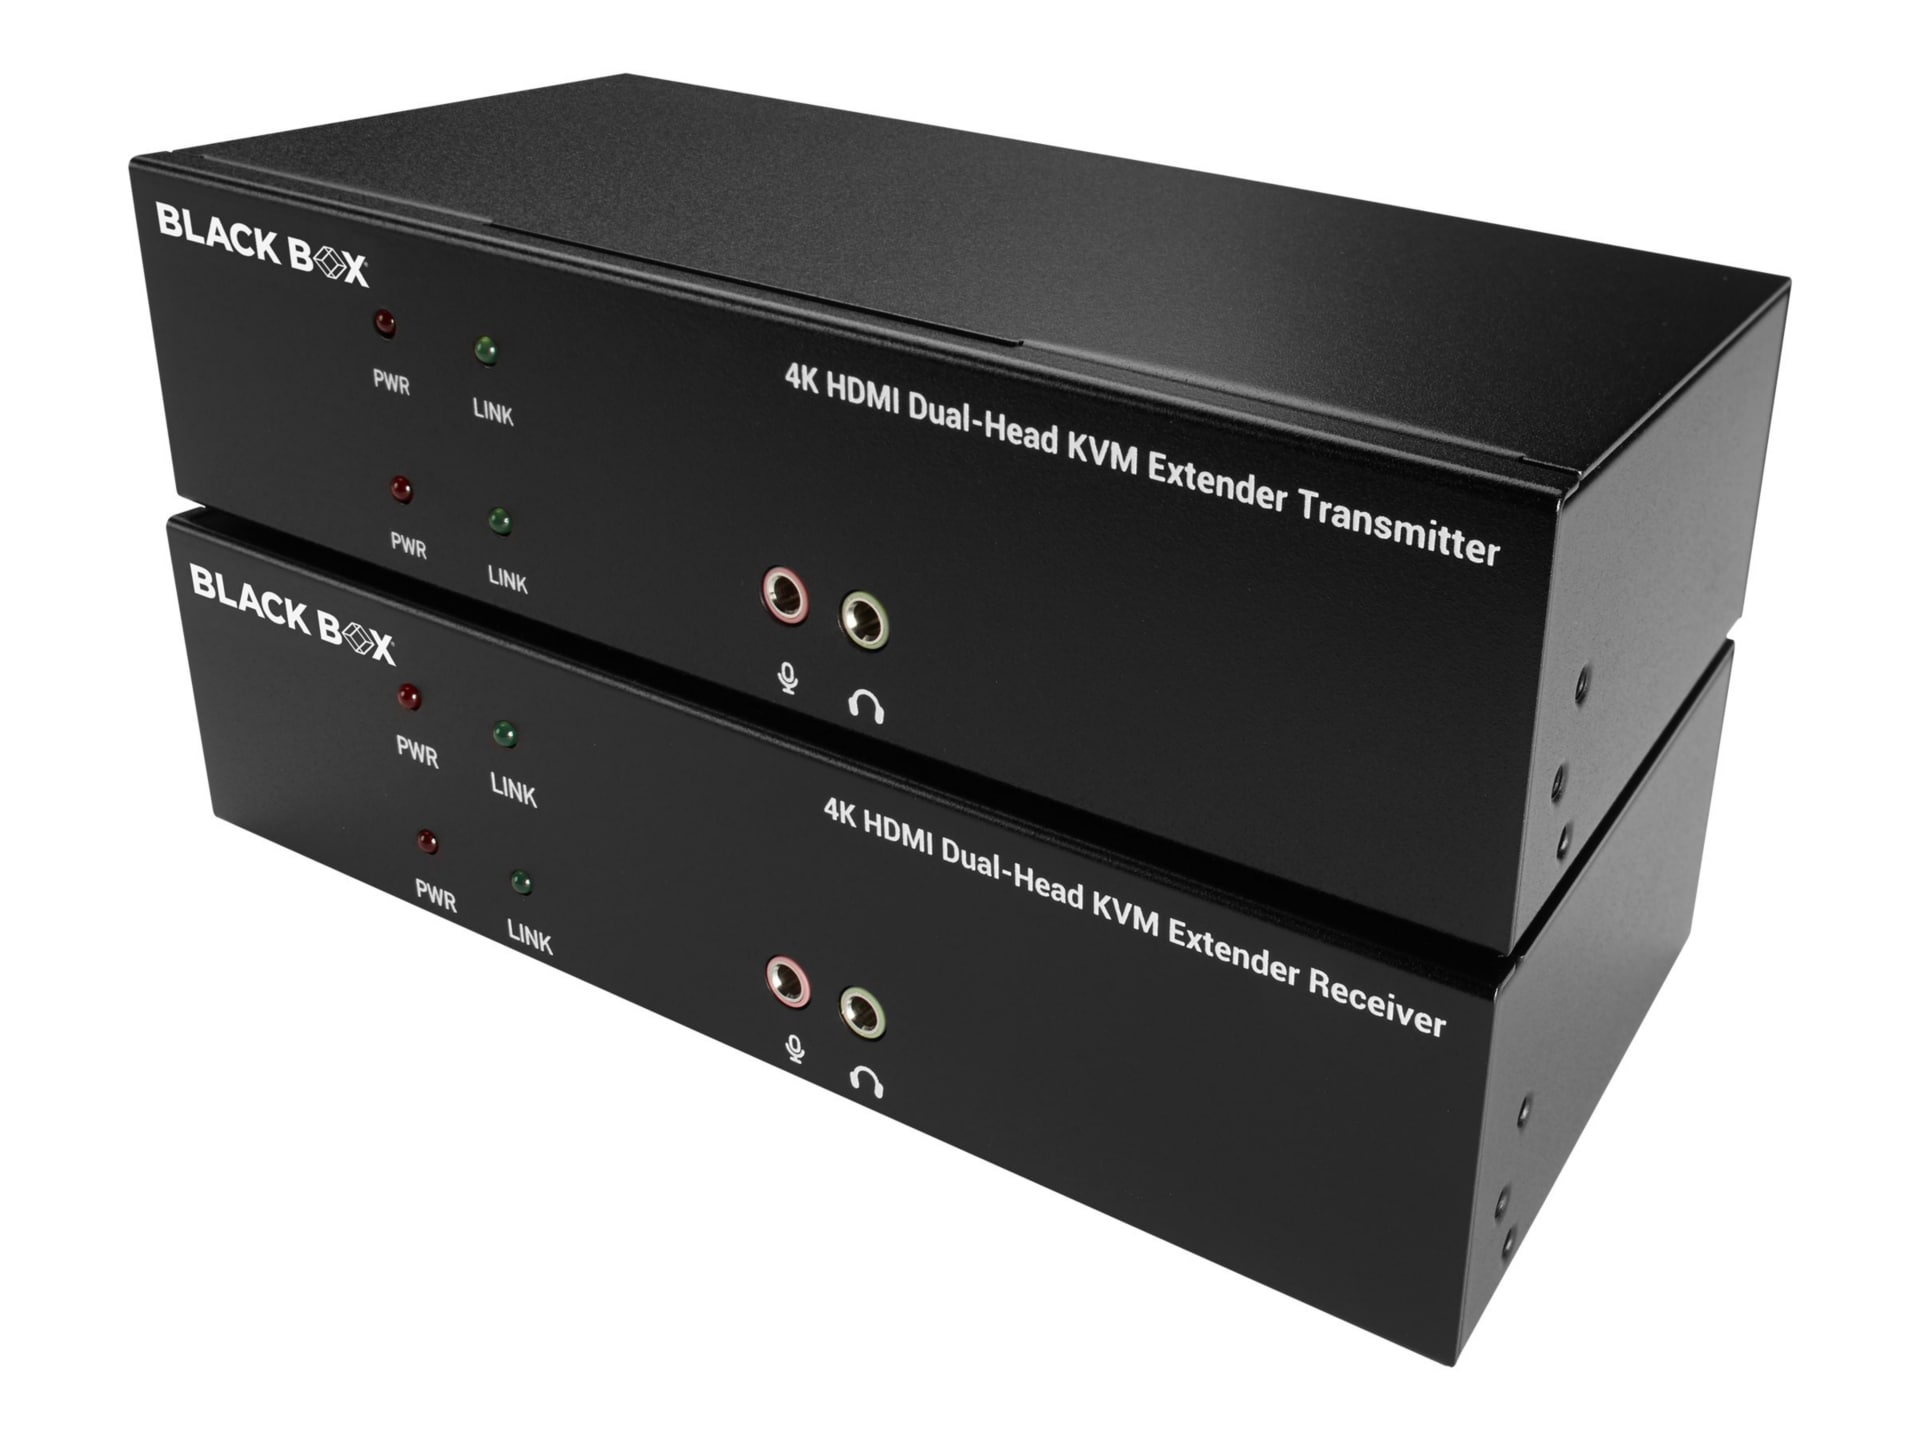 Black Box KVX Series KVM Extender over CATx - Dual-Head, DVI-I, USB 2.0, Se